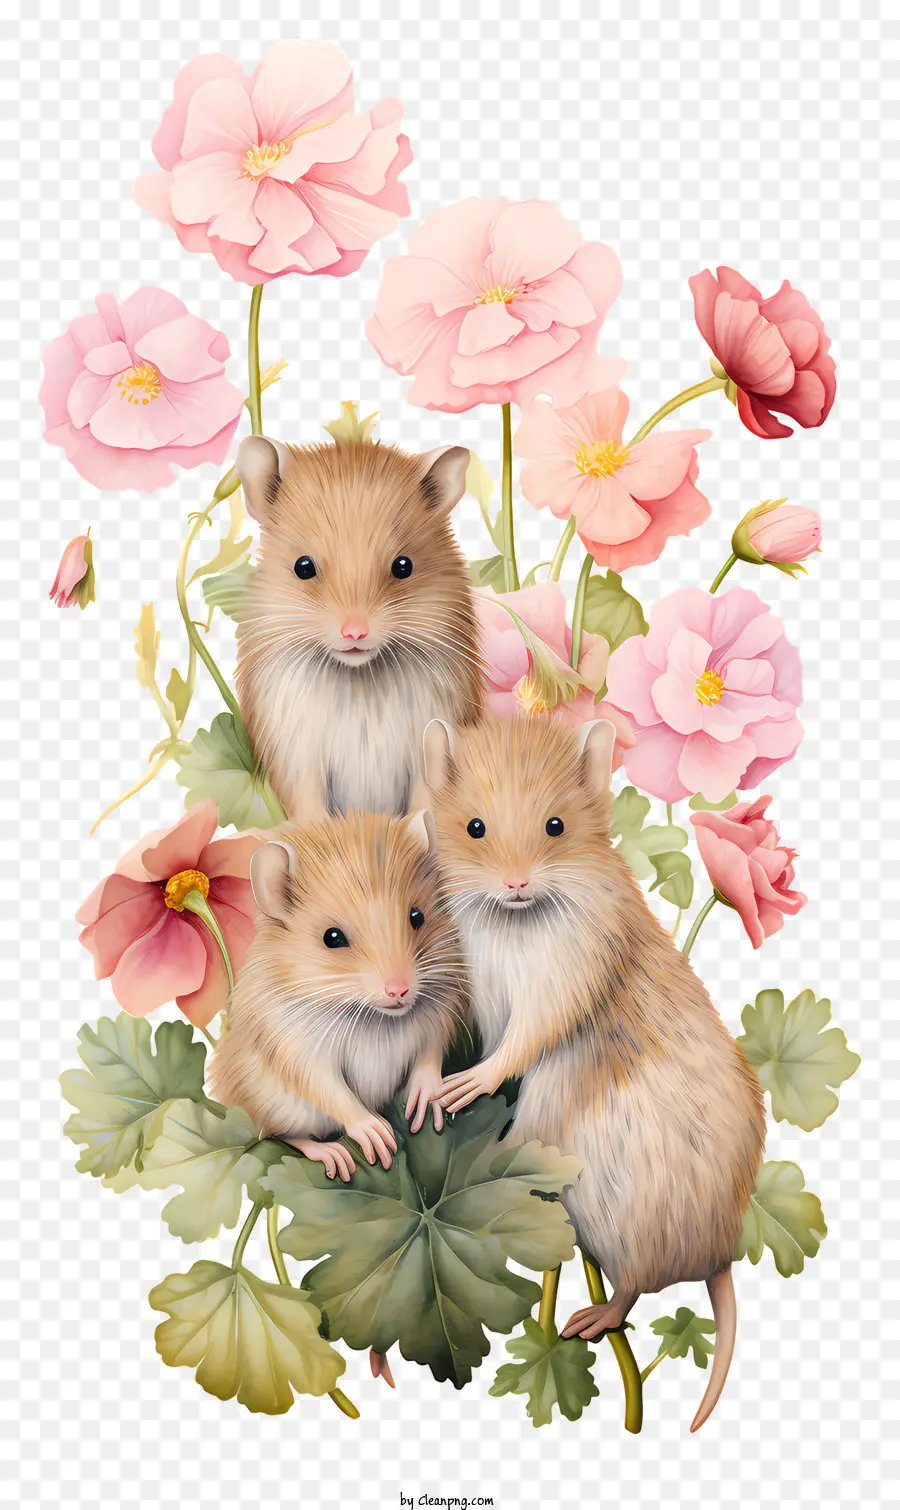 Kleine Nagetiere flauschige Tiere rosa Blumen süße Tiere skurrile Kreaturen - Drei flauschige Nagetiere mit rosa Blumen, Unschuld